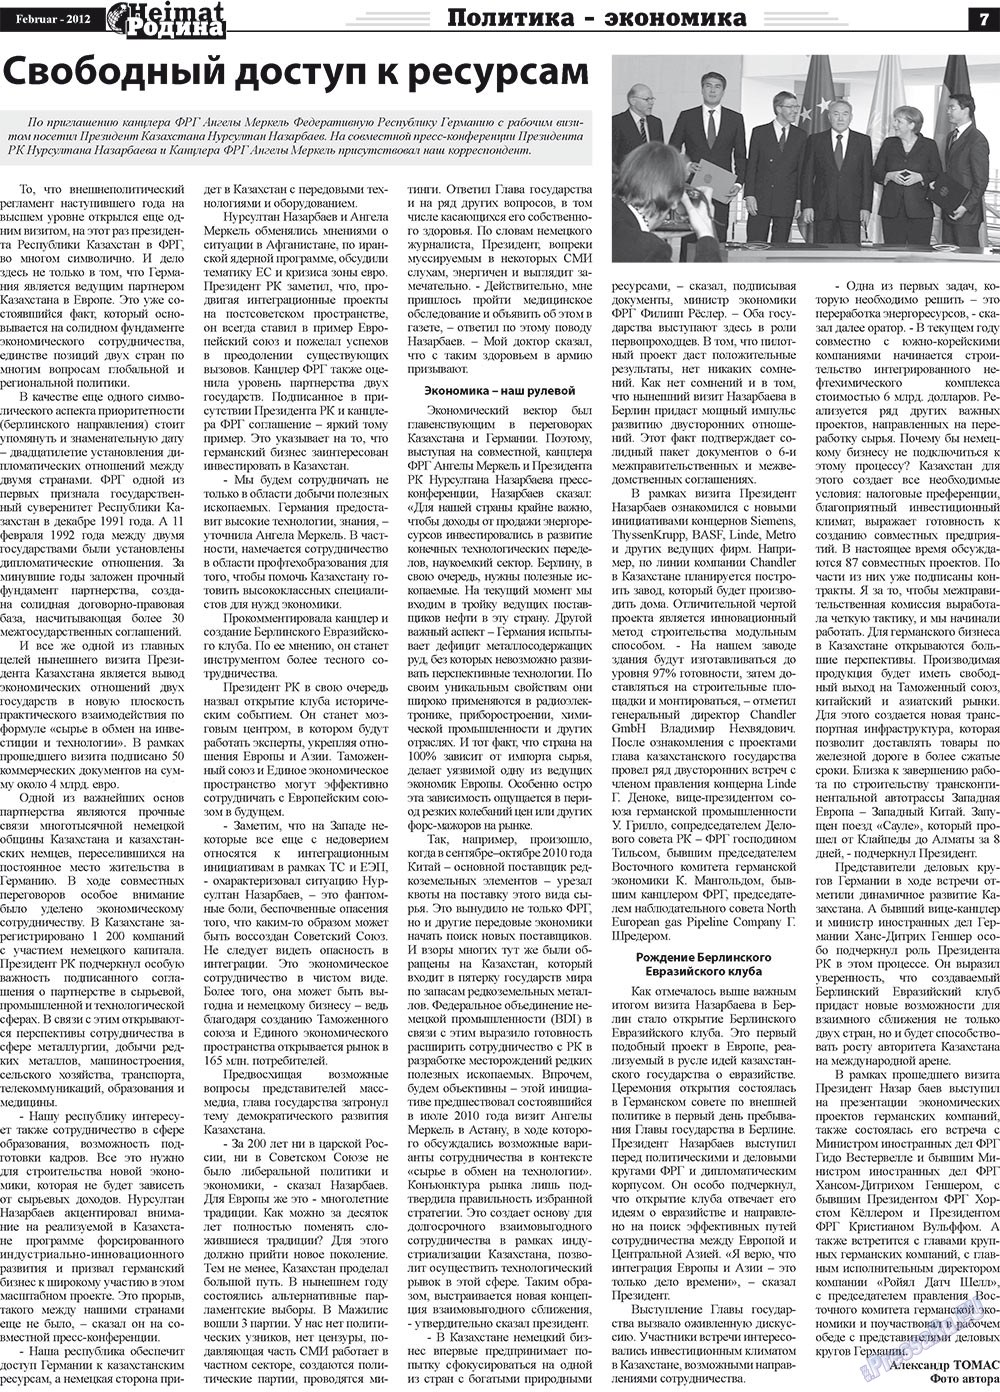 Heimat-Родина (Zeitung). 2012 Jahr, Ausgabe 2, Seite 7